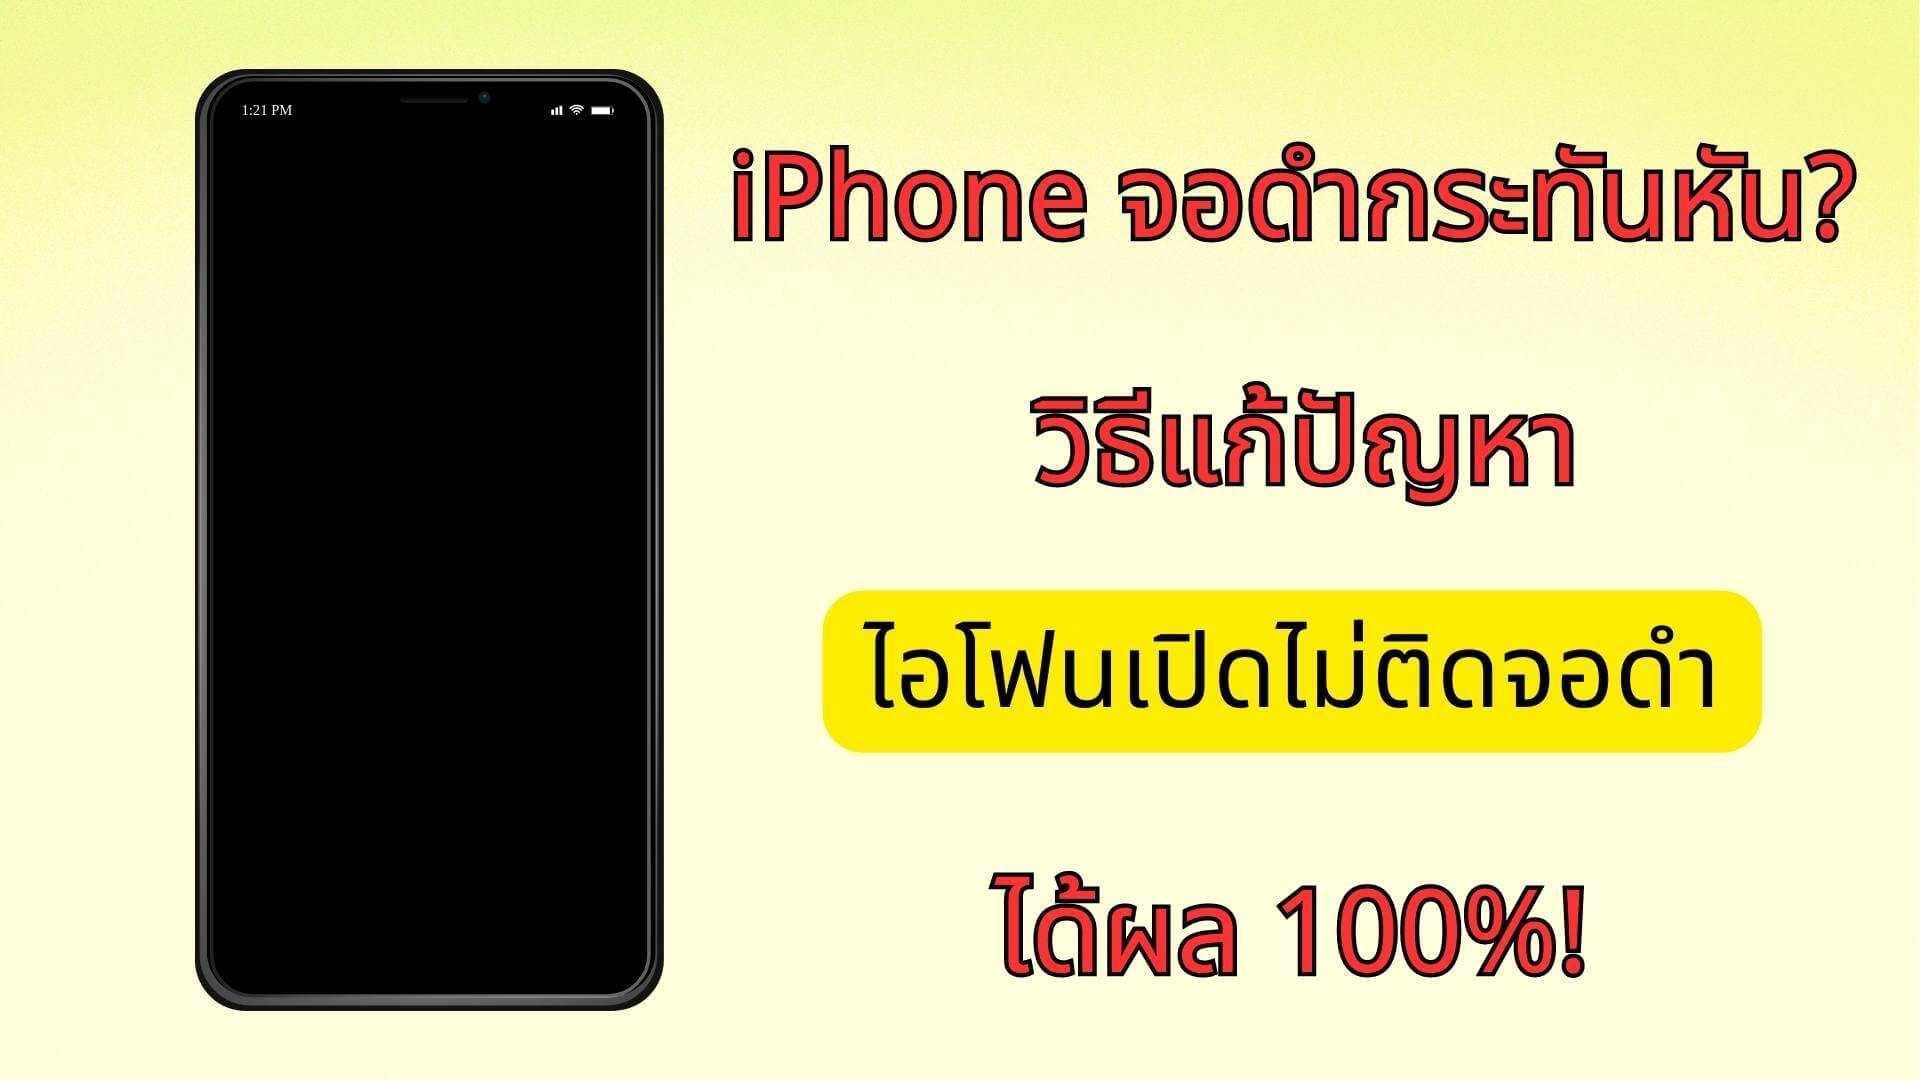 Iphone จอดำกระทันหัน? วิธีแก้ปัญหาไอโฟนเปิดไม่ติดจอดําได้ผล 100%!